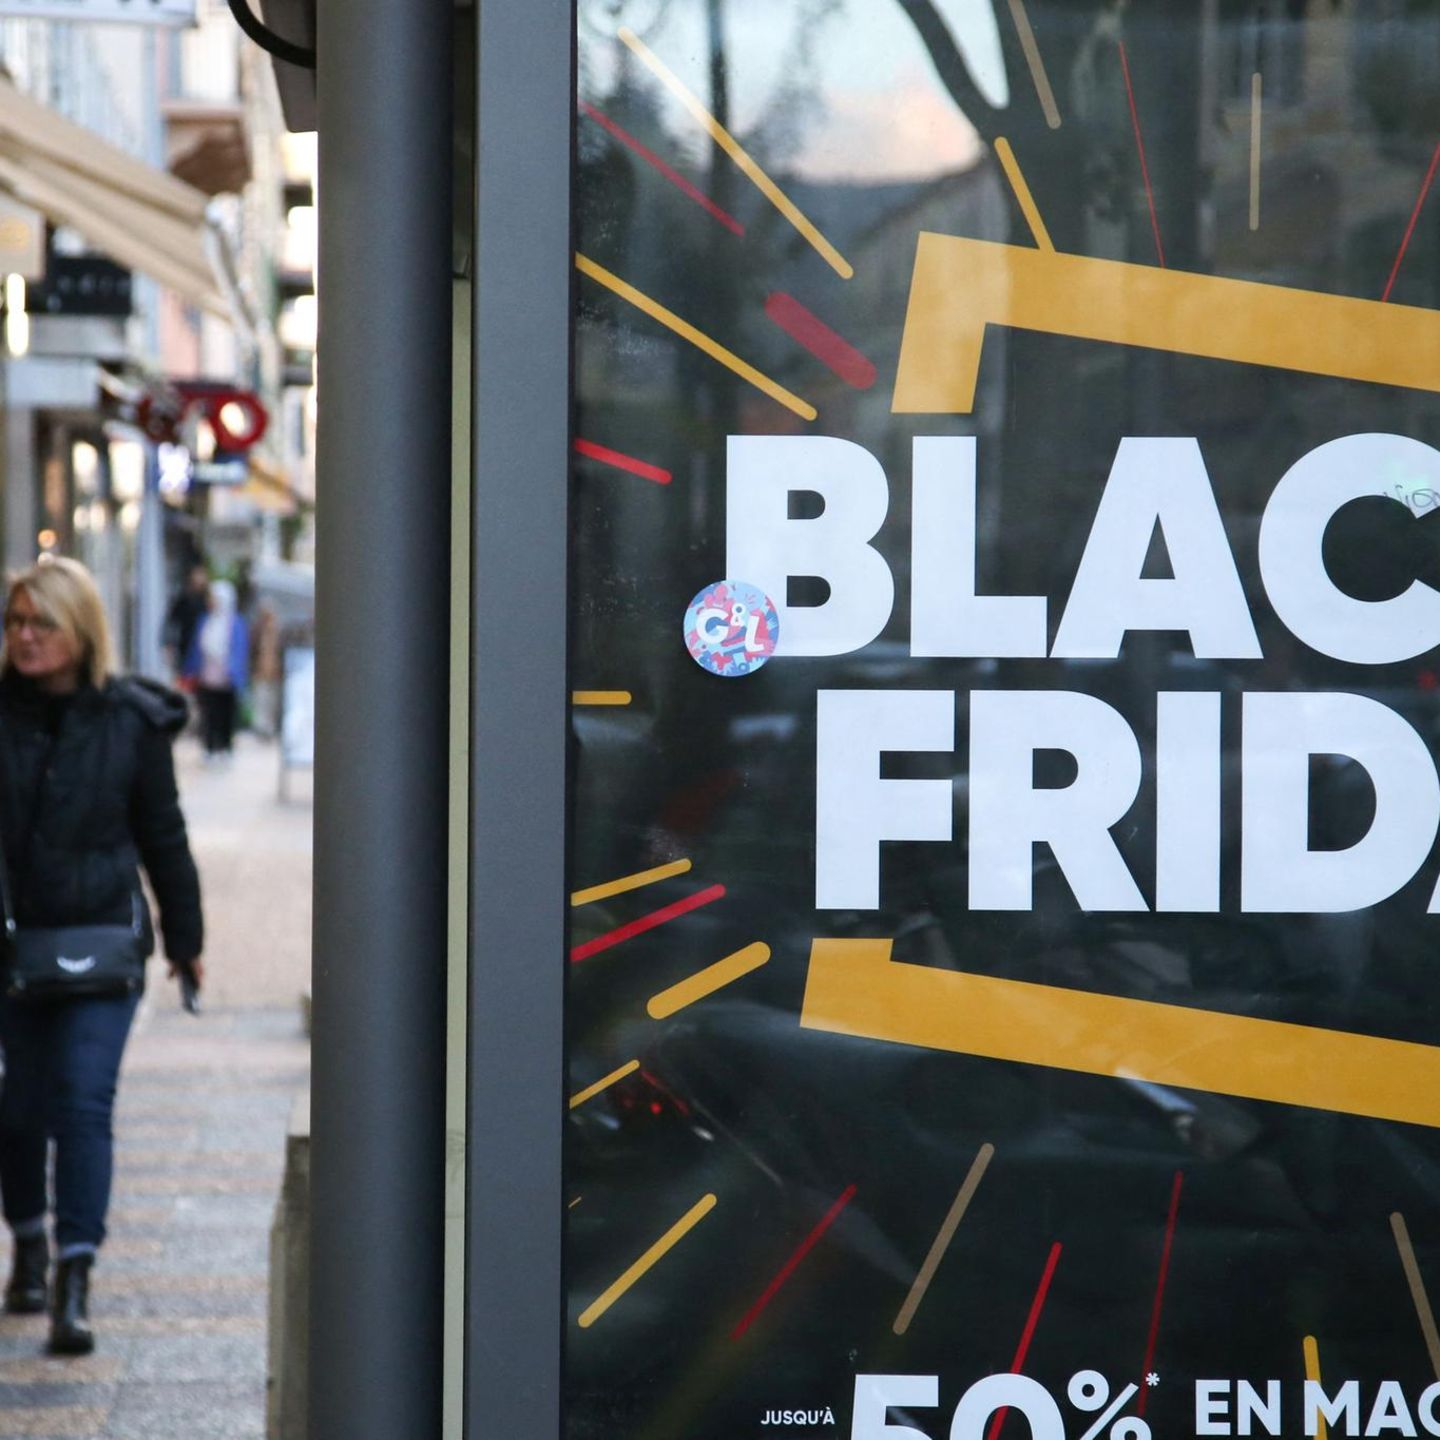 Black Friday steht bevor: So erkennen Sie betrügerische Fake-Shops